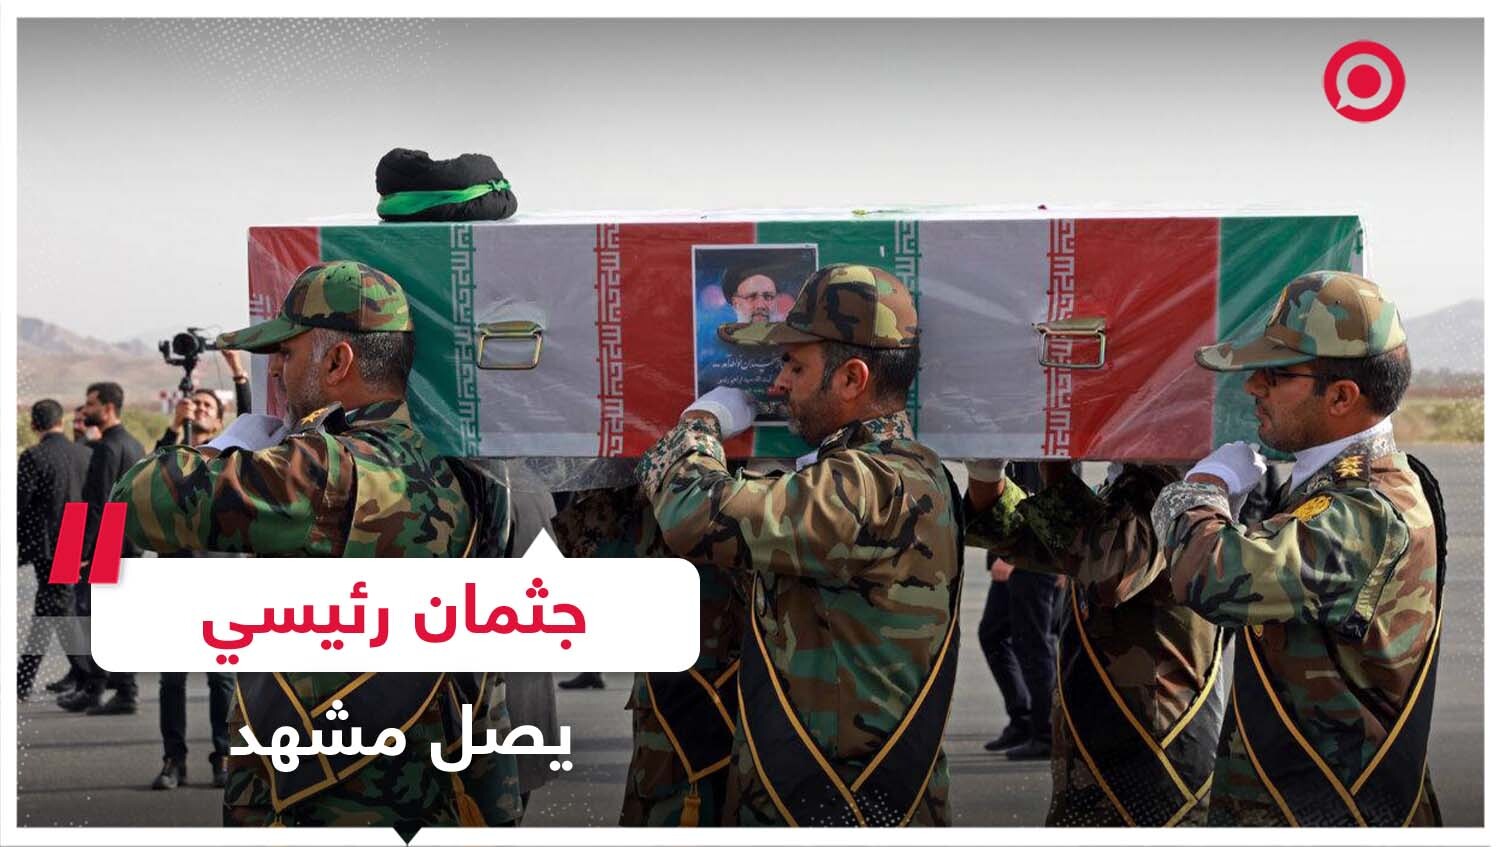 جثمان إبراهيم رئيسي يصل مدينة مشهد الإيرانية